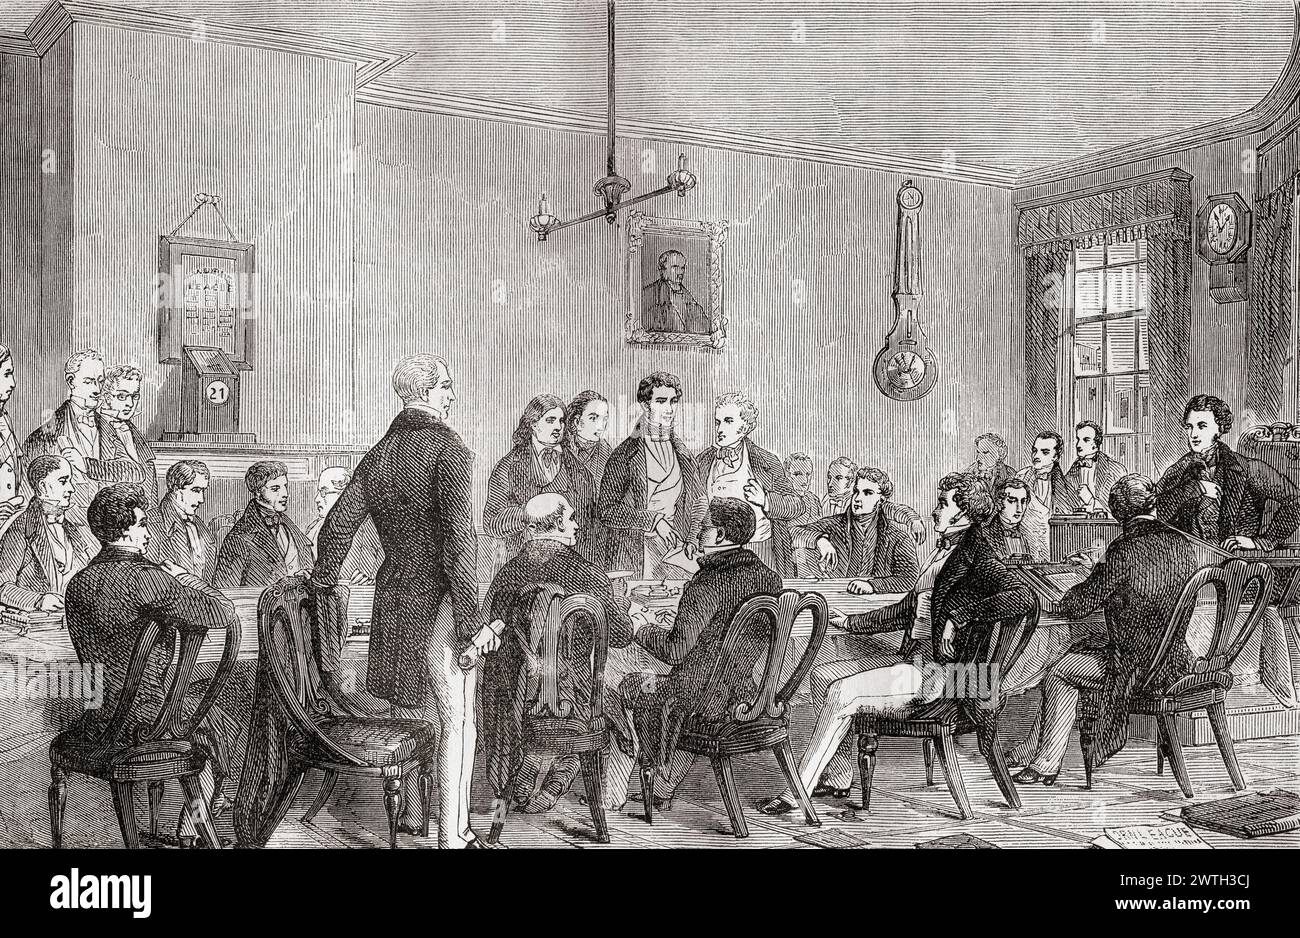 Treffen der Anti-Corn Law League in Newalls Gebäuden, Manchester, 19. Jahrhundert. Die Corn Laws waren Steuern auf importiertes Getreide, die 1815 eingeführt wurden, und die Liga war dafür verantwortlich, die öffentliche Meinung und die Elite gegen die Gesetze zu wenden. Aus Cassells illustrierter Geschichte Englands. Stockfoto